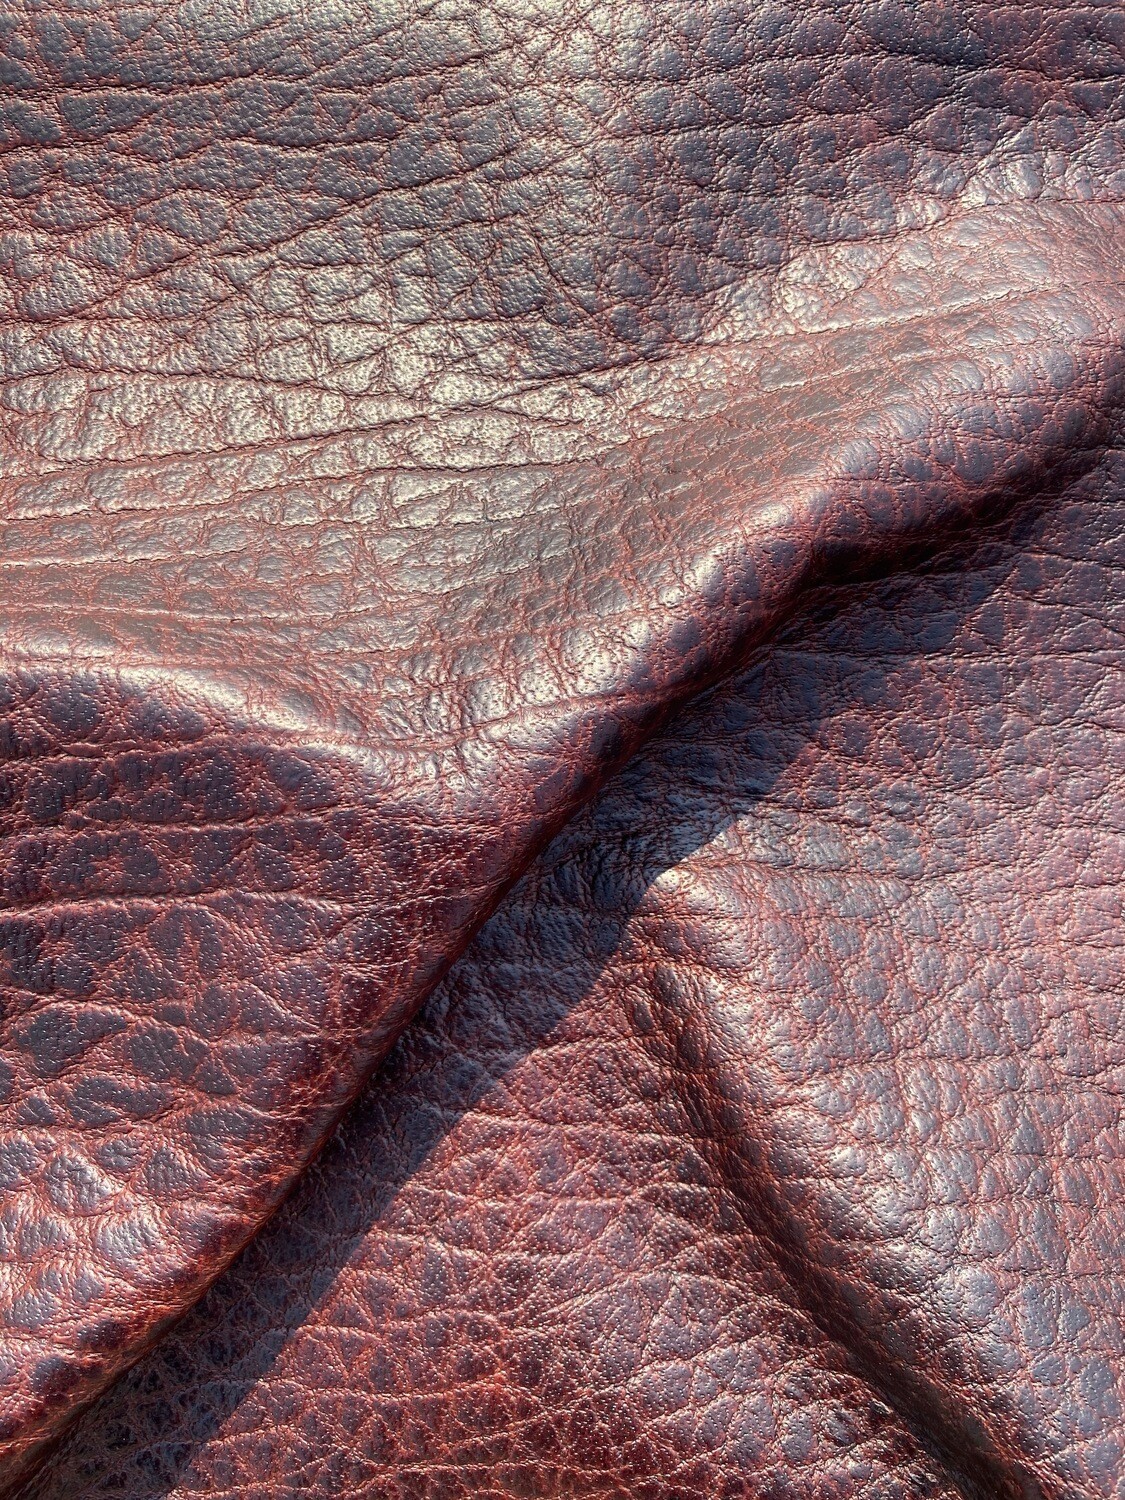 Cognac Auburn Bison Leather